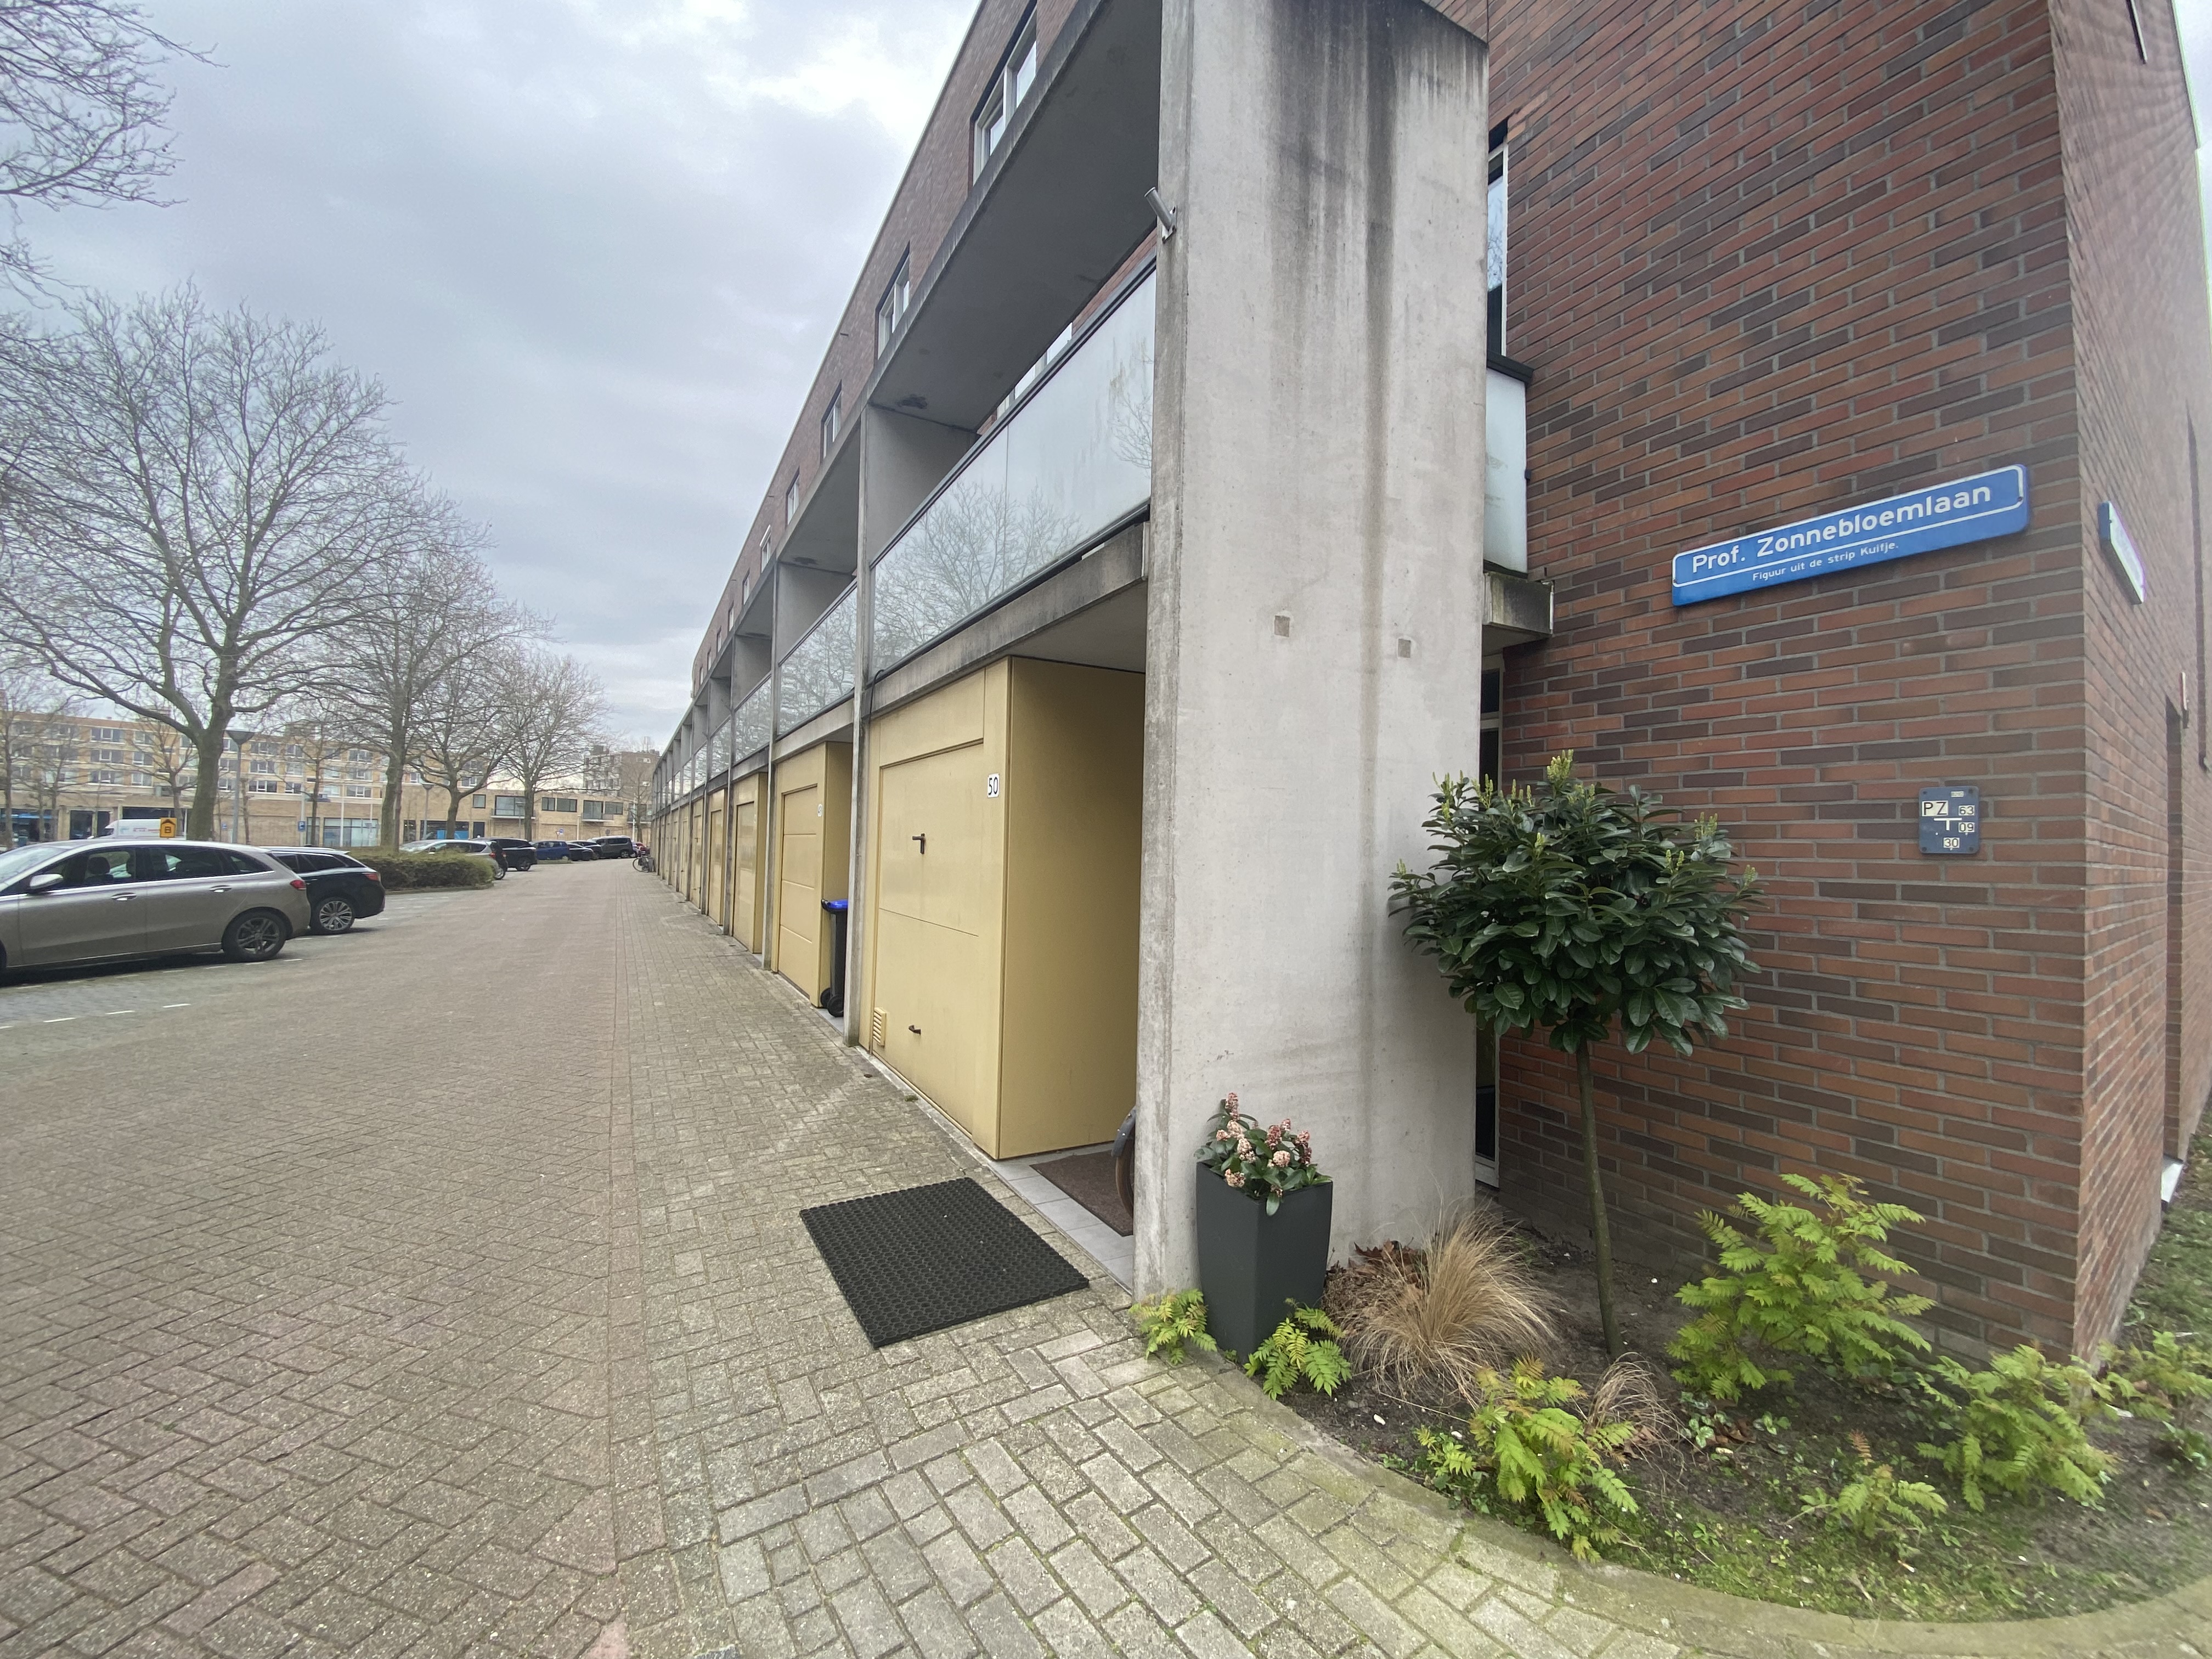 Te huur: Appartement Prof. Zonnebloemlaan, Utrecht - 20